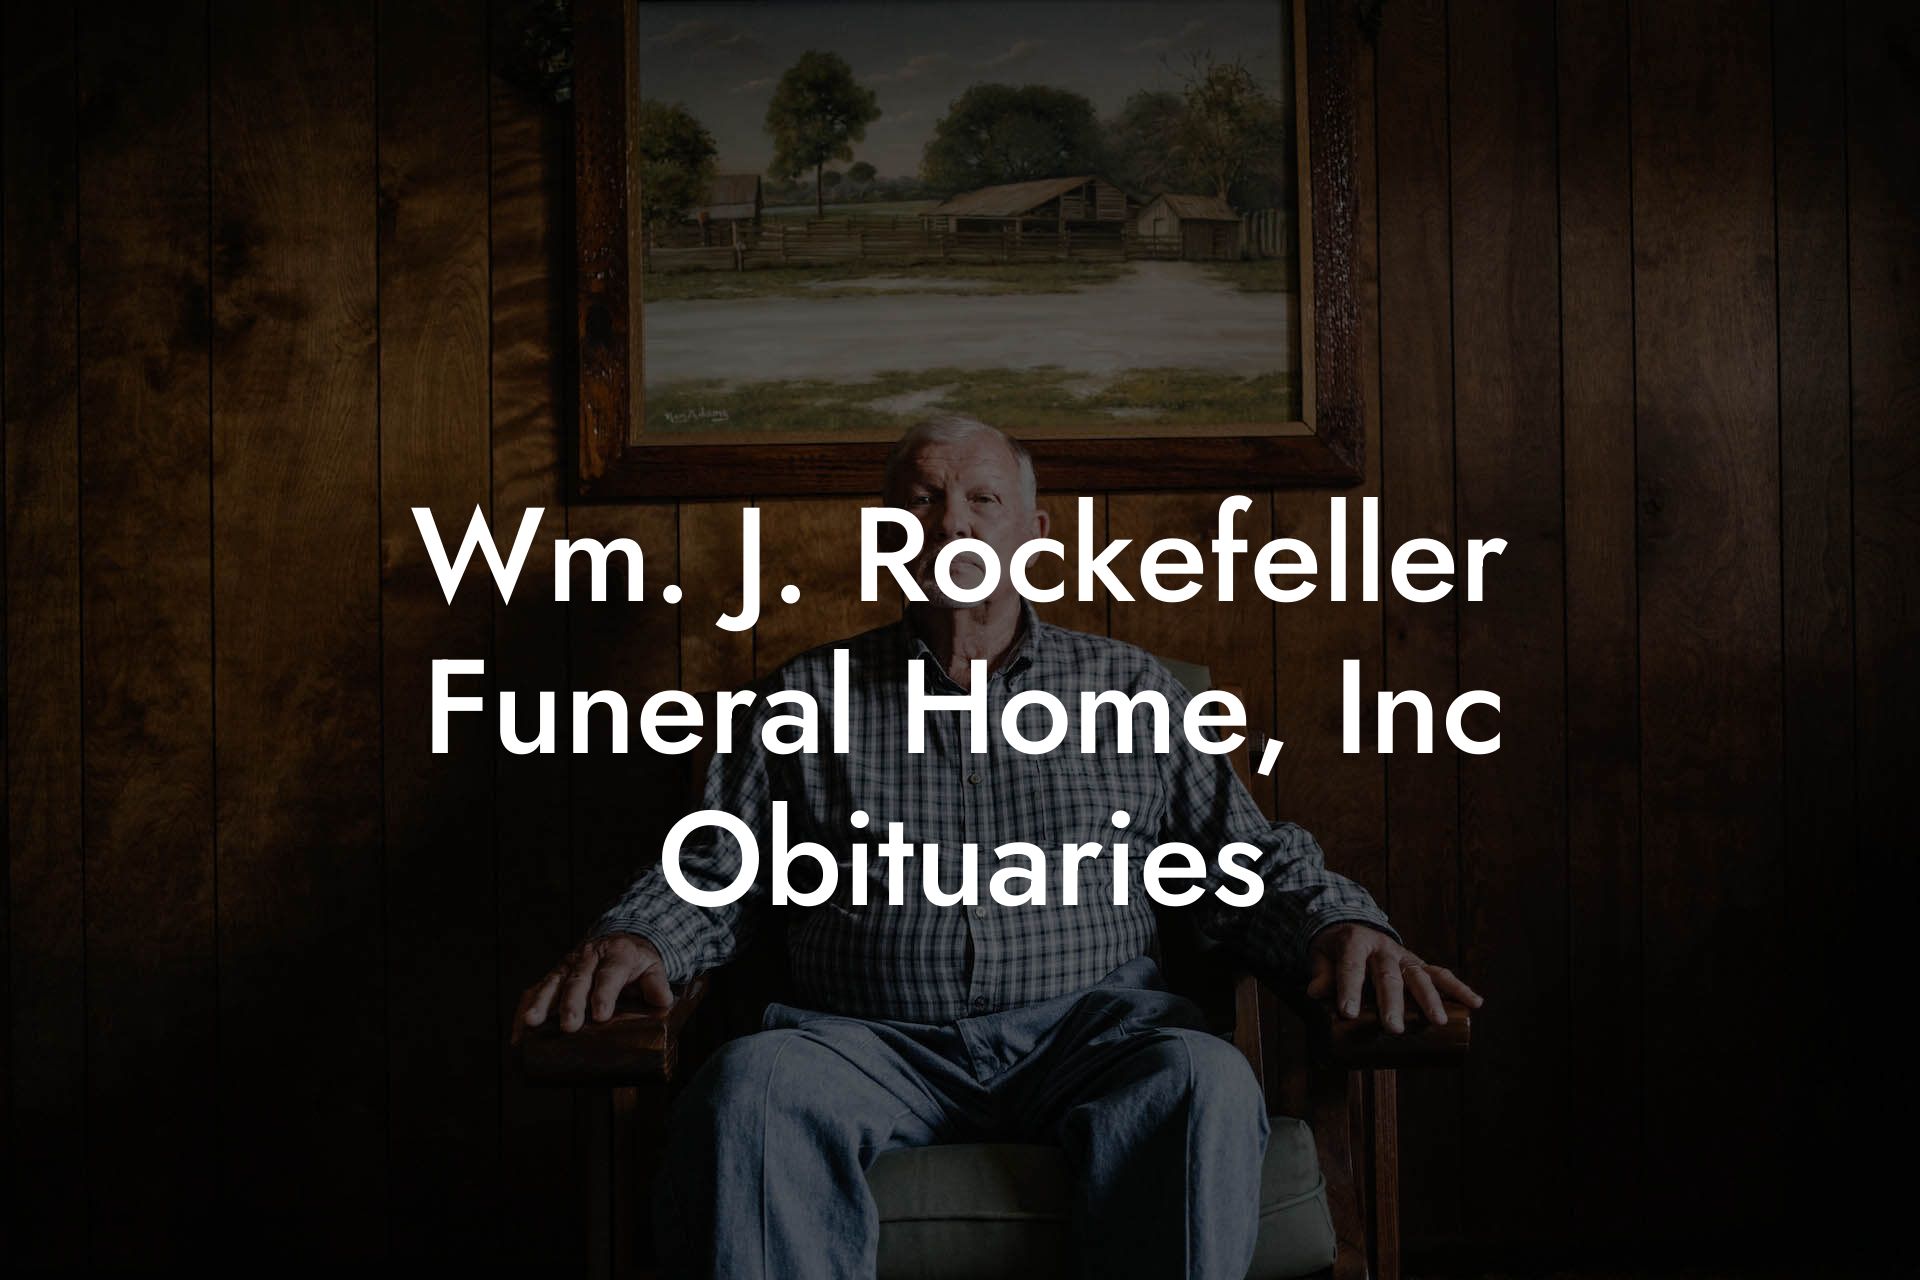 Wm. J. Rockefeller Funeral Home, Inc. Obituaries